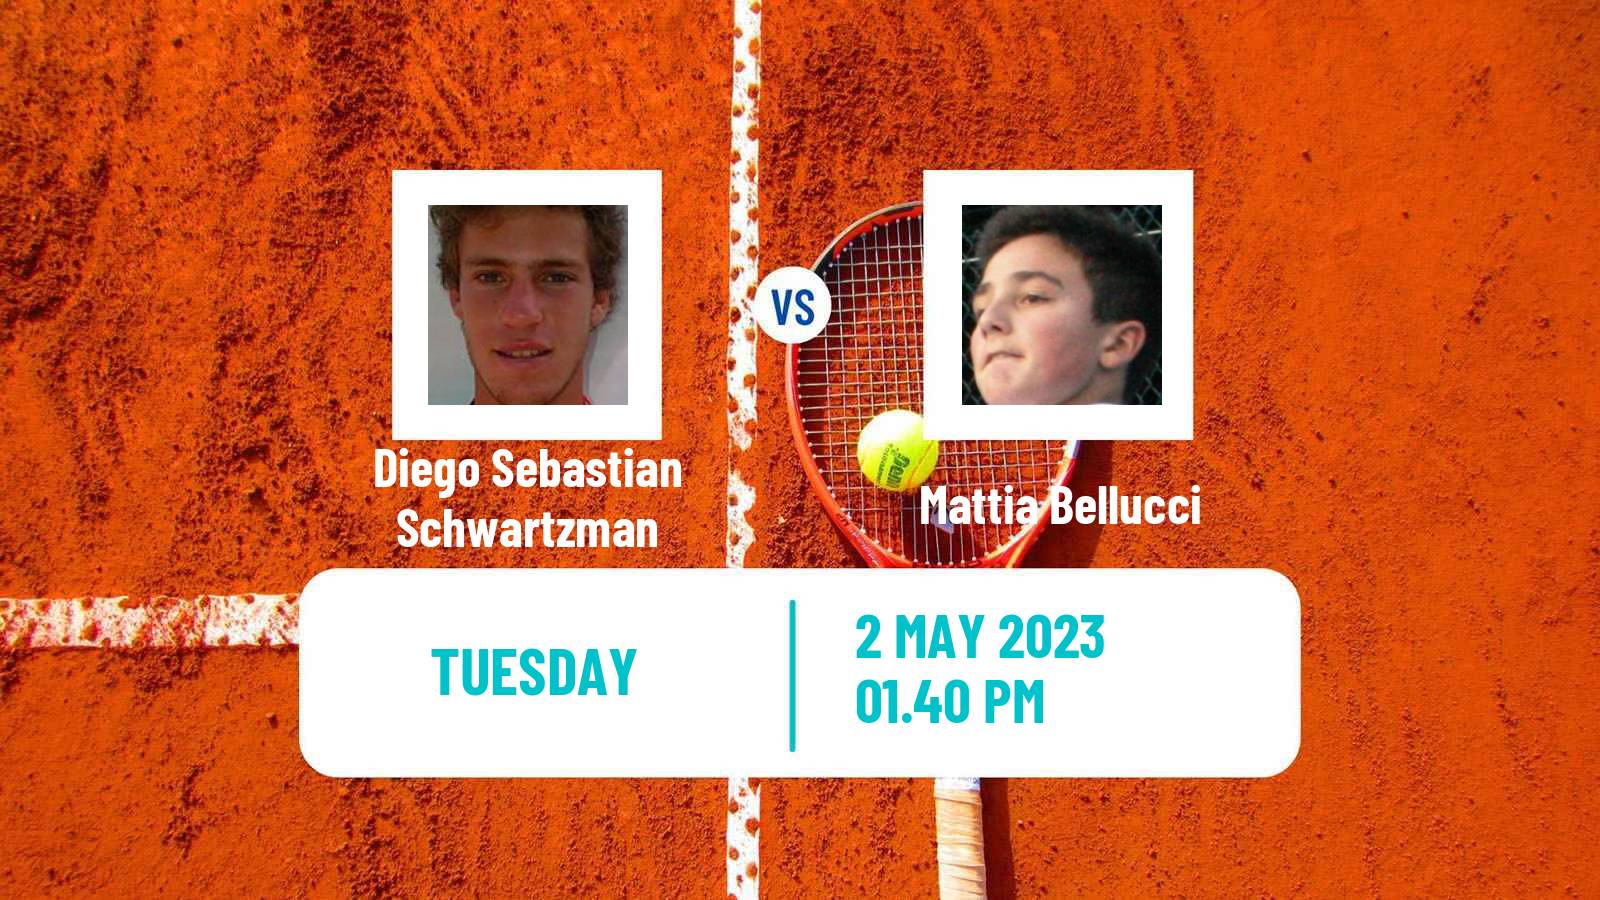 Tennis ATP Challenger Diego Sebastian Schwartzman - Mattia Bellucci